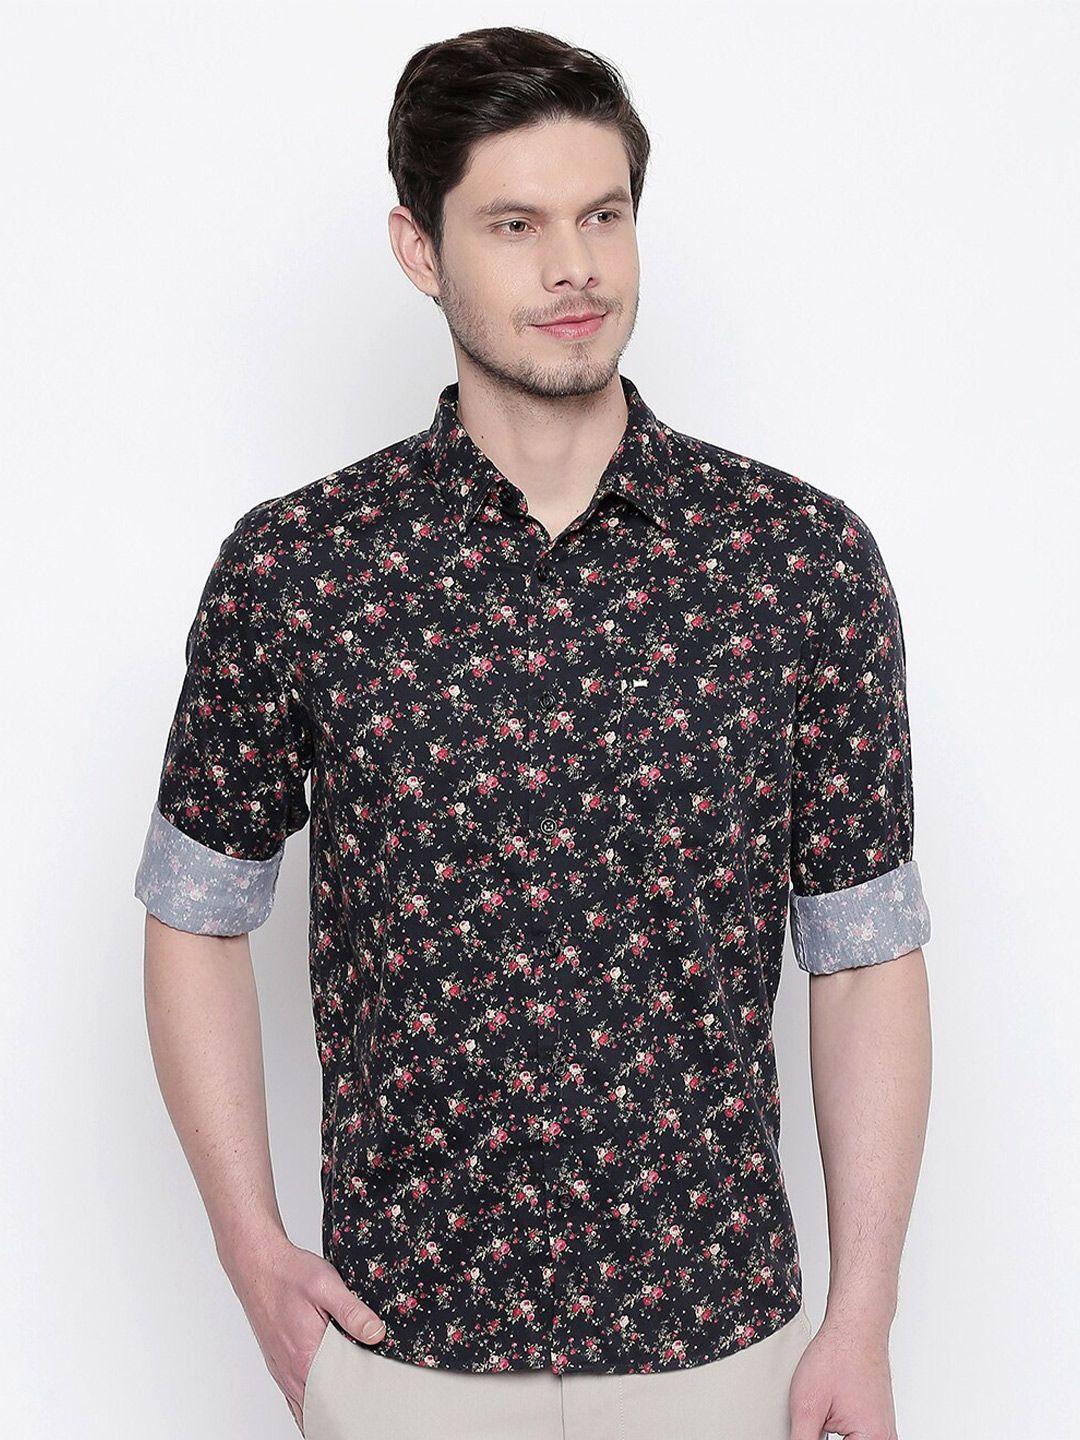 basics men black slim fit floral printed casual shirt